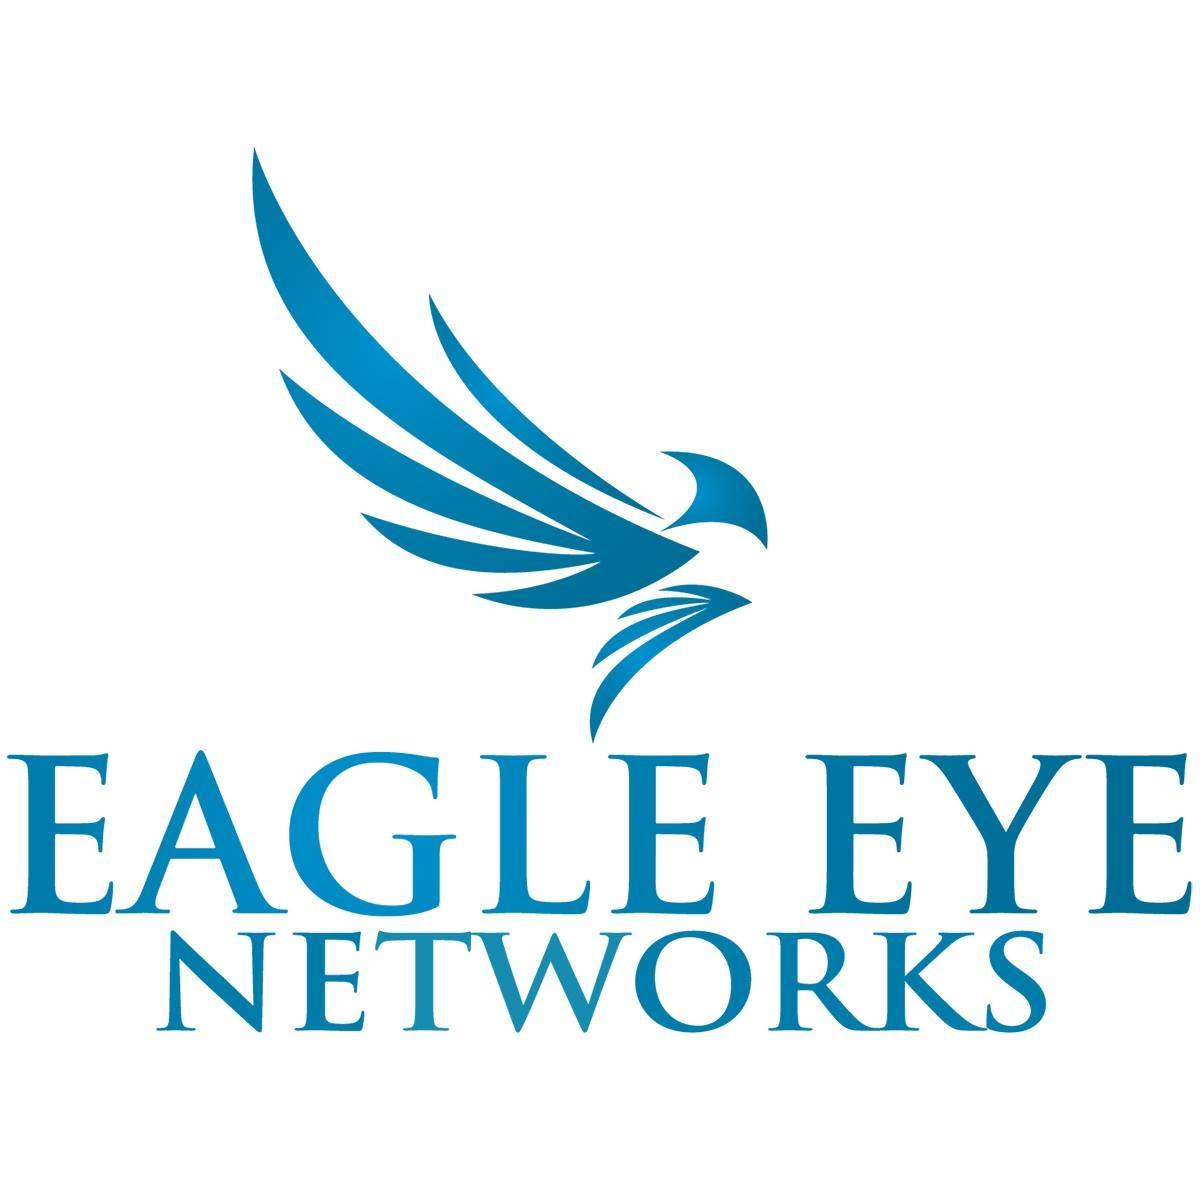 Eagle Eye Networks Company Profile